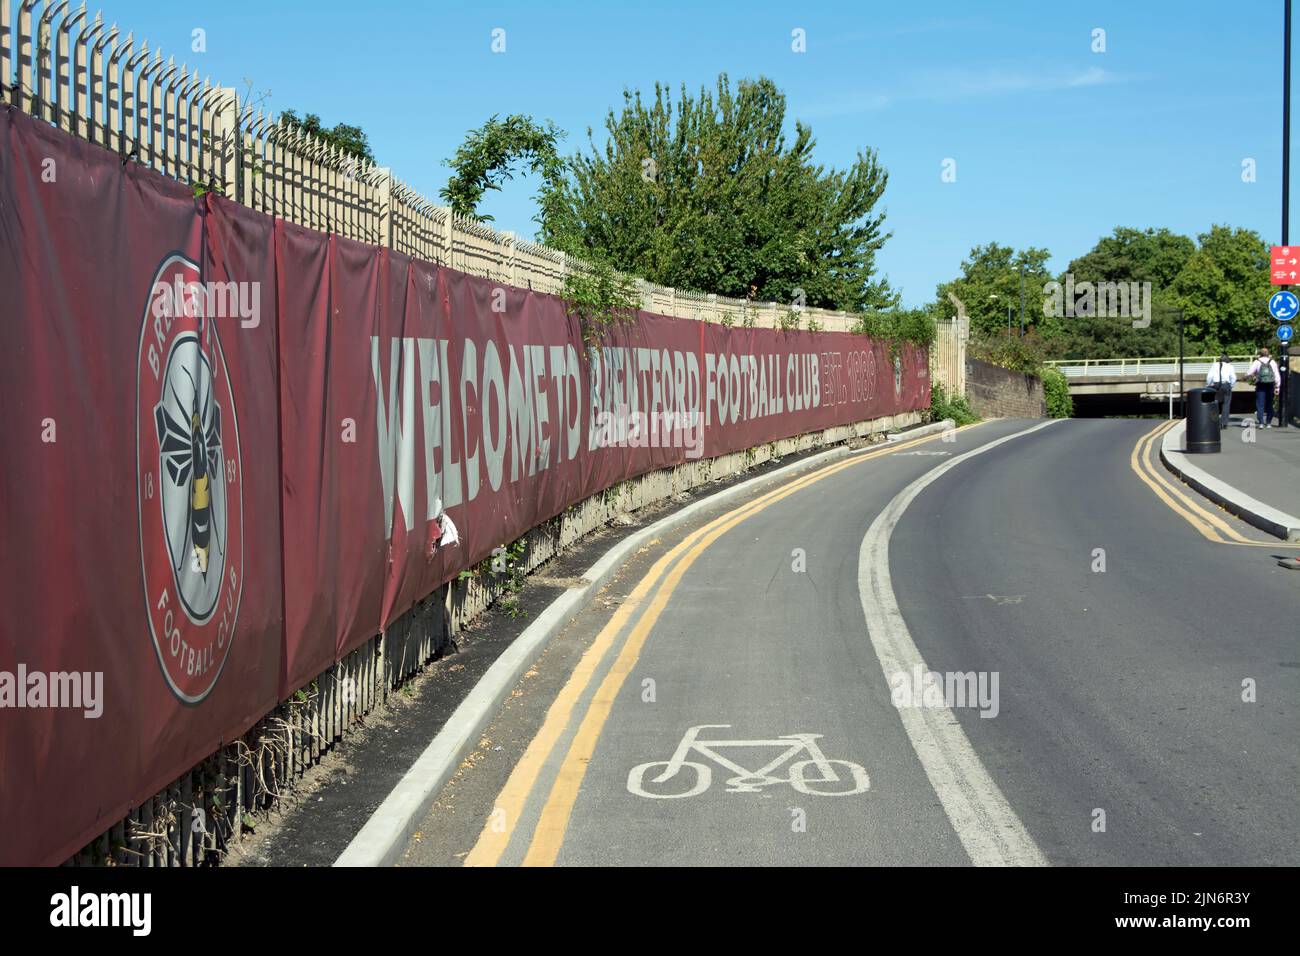 bienvenido a la bandera del club de fútbol de brentford junto a un carril bici, fuera del terreno del club, el estadio comunitario gtech, en el oeste de londres, inglaterra Foto de stock